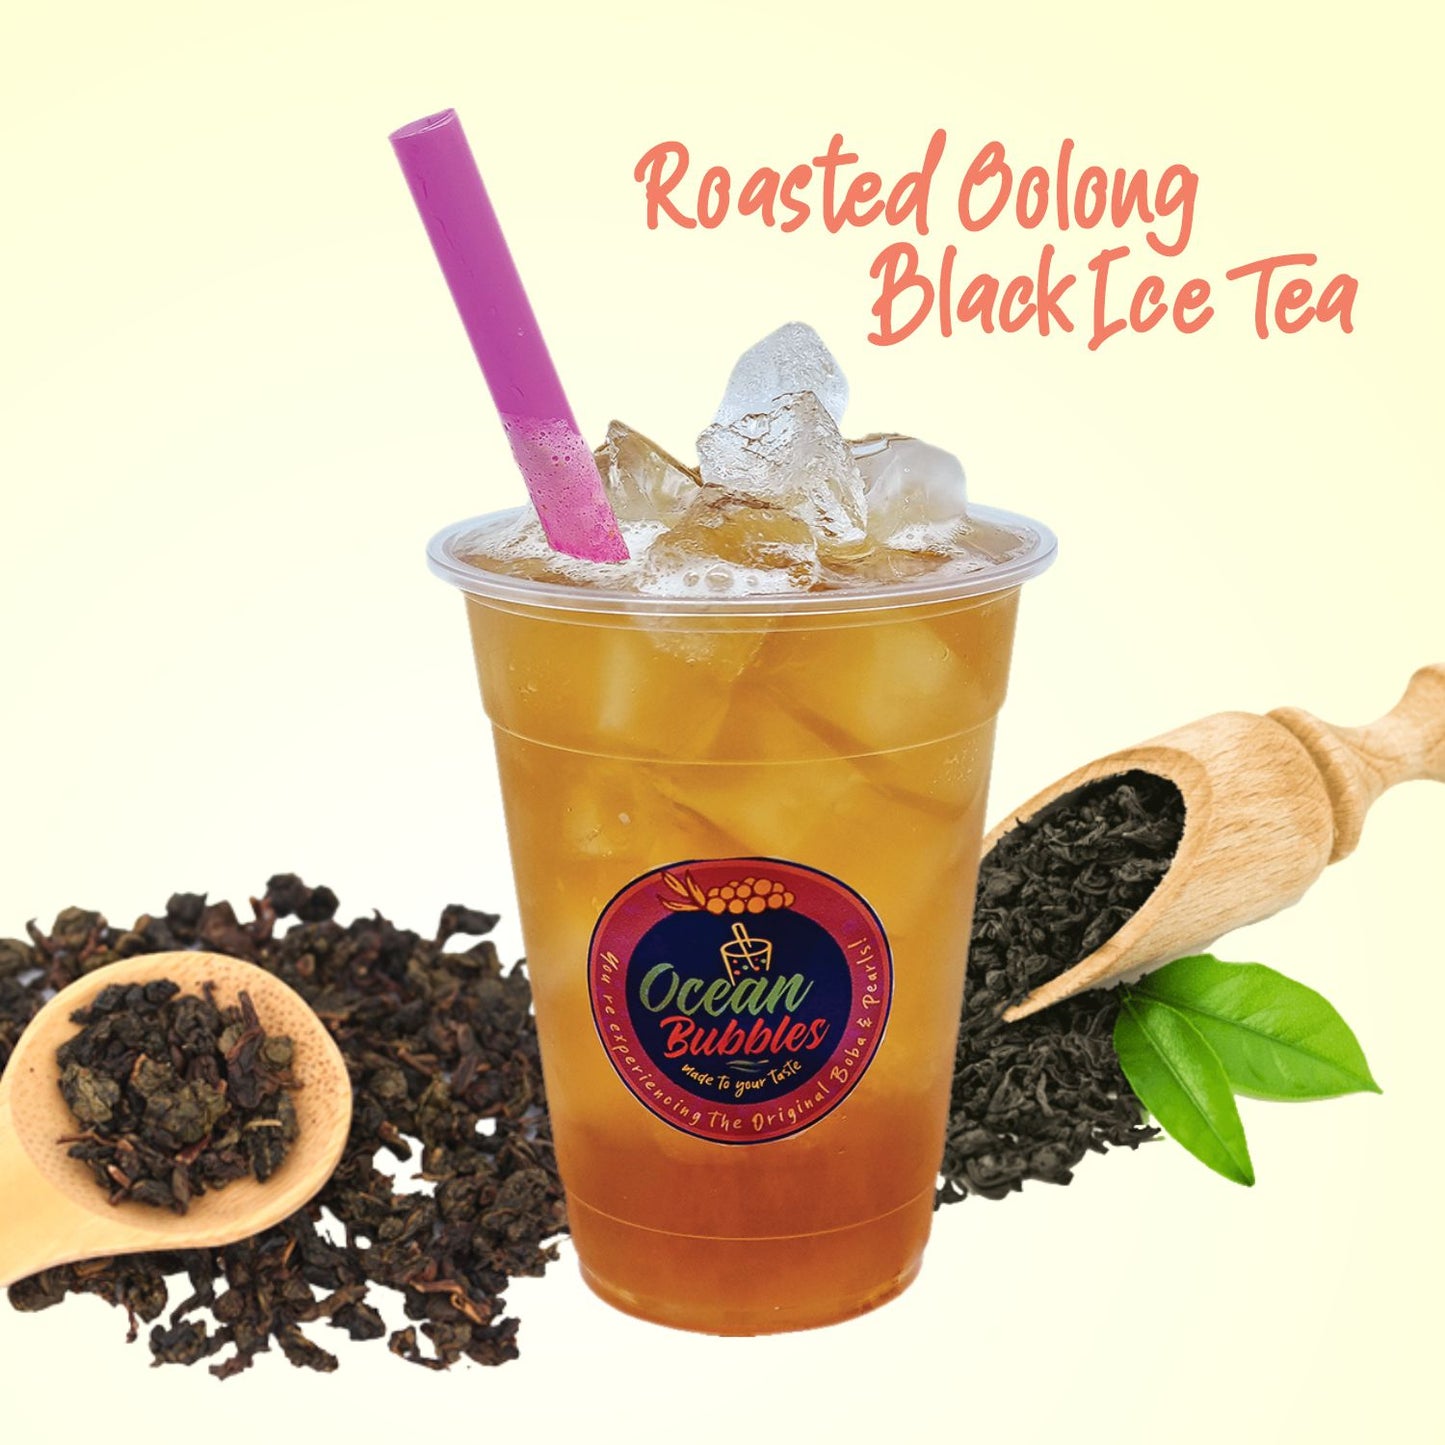 Roasted Oolong Black Ice Tea